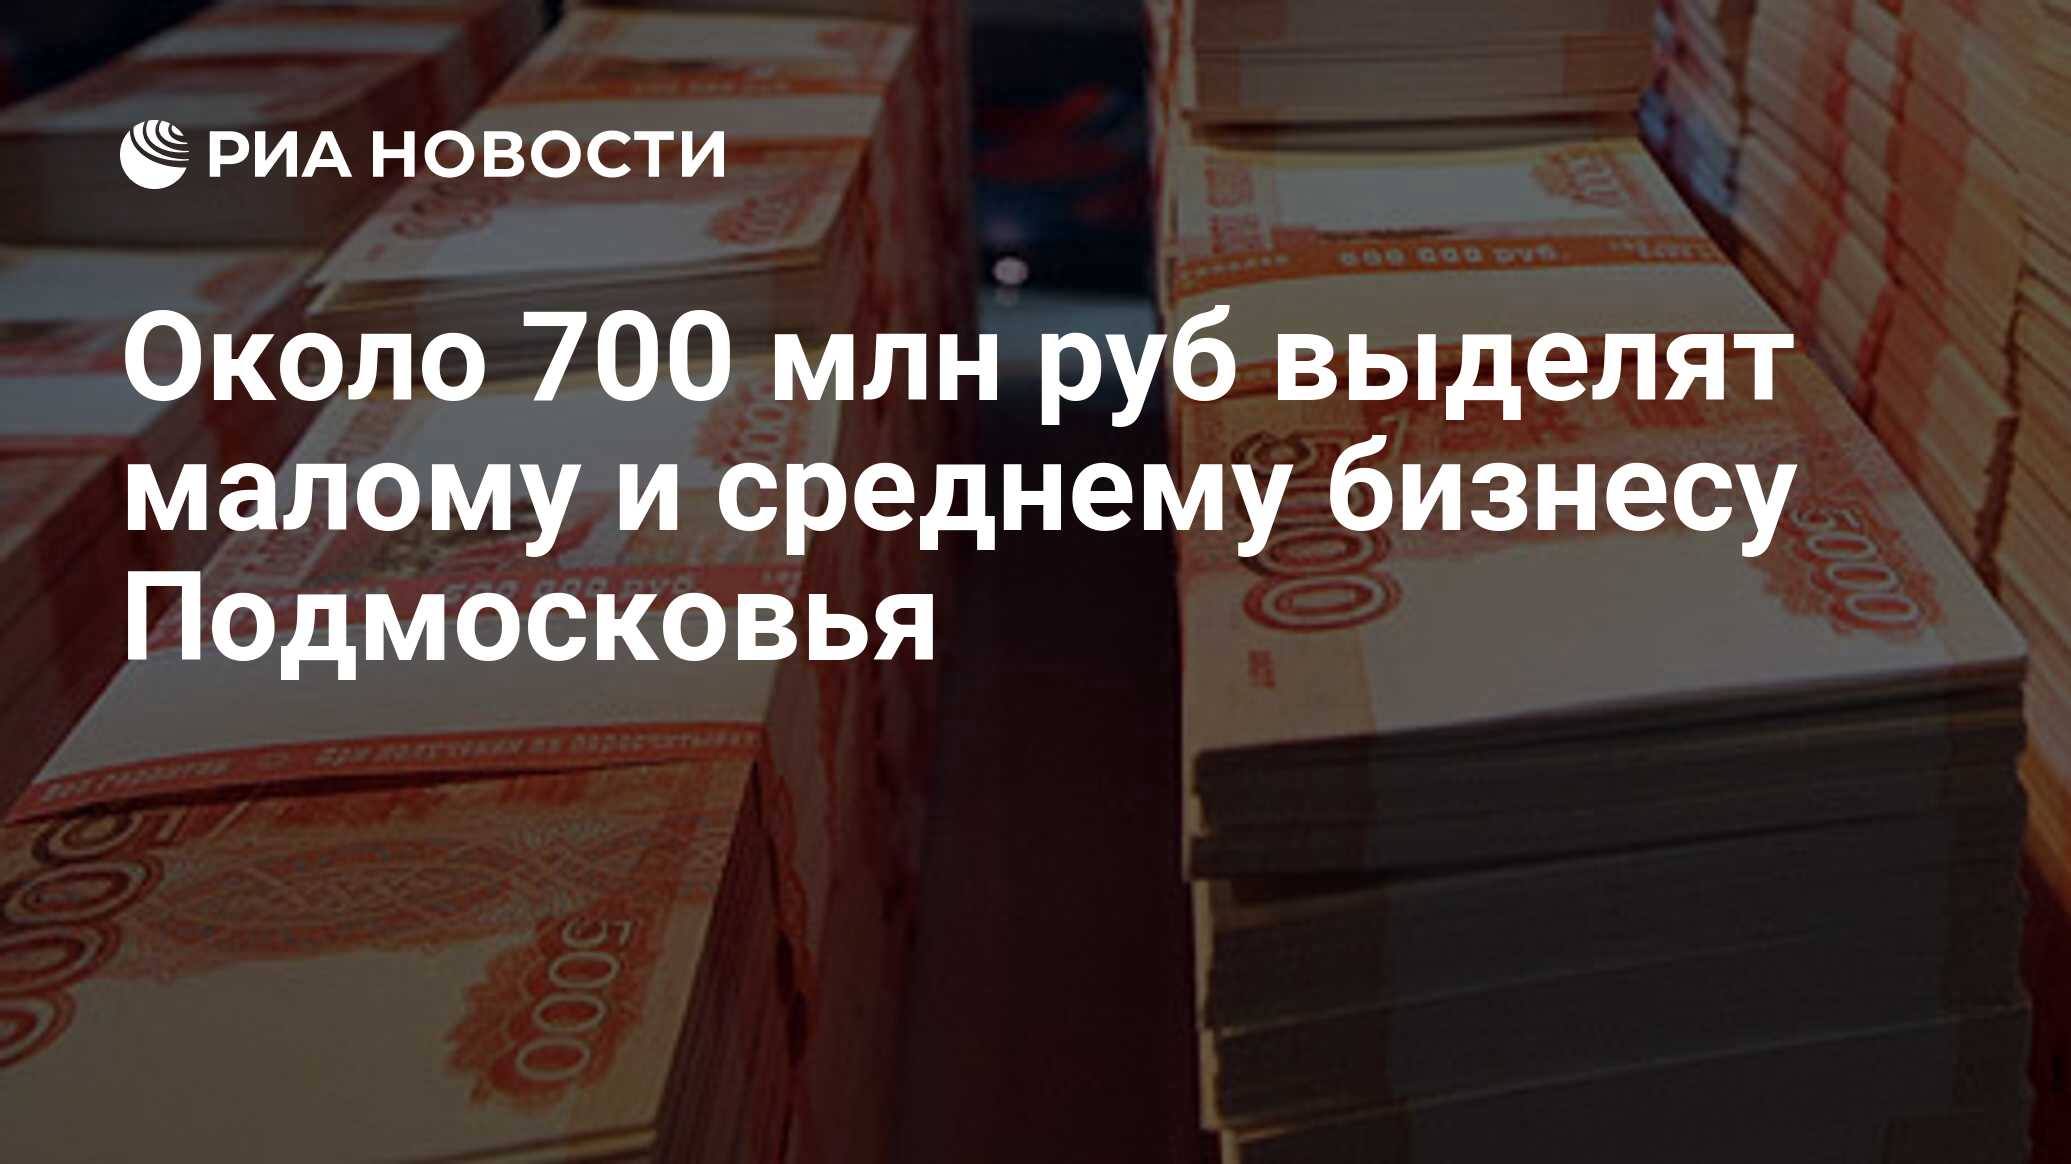 Деньги 1 миллион рублей